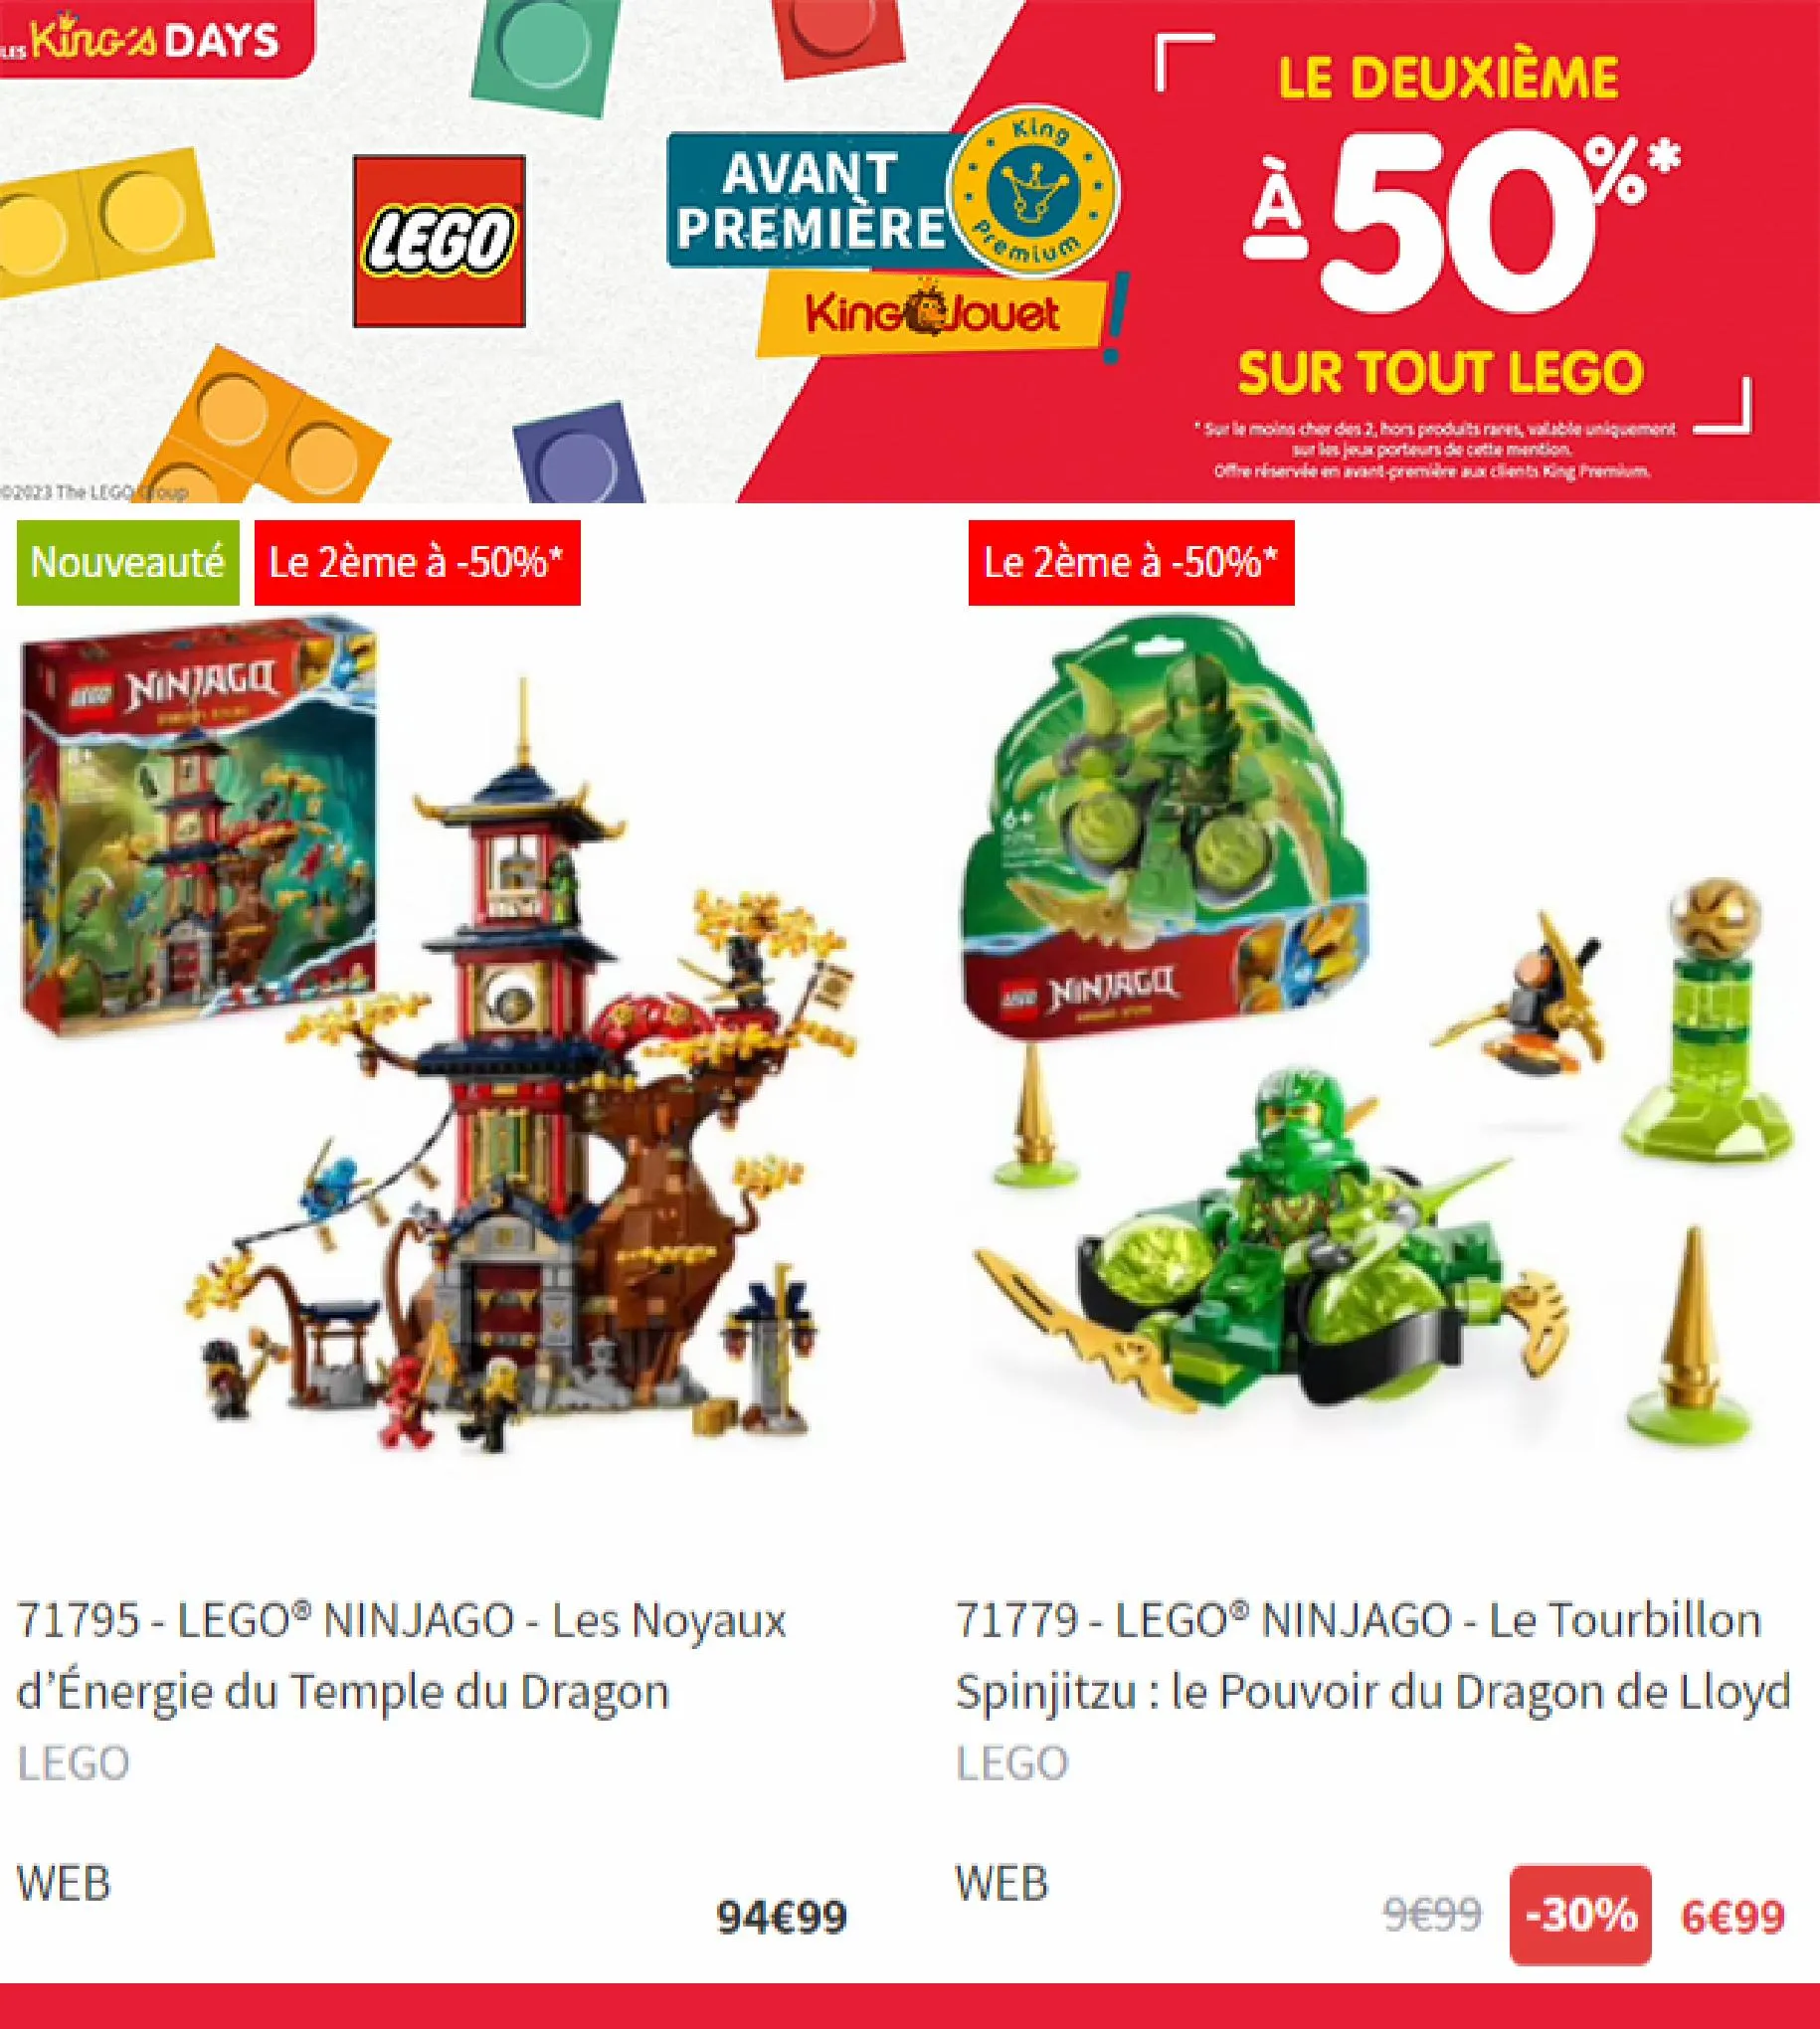 Catalogue Le deuxieme a -50% sur tout LEGO, page 00002